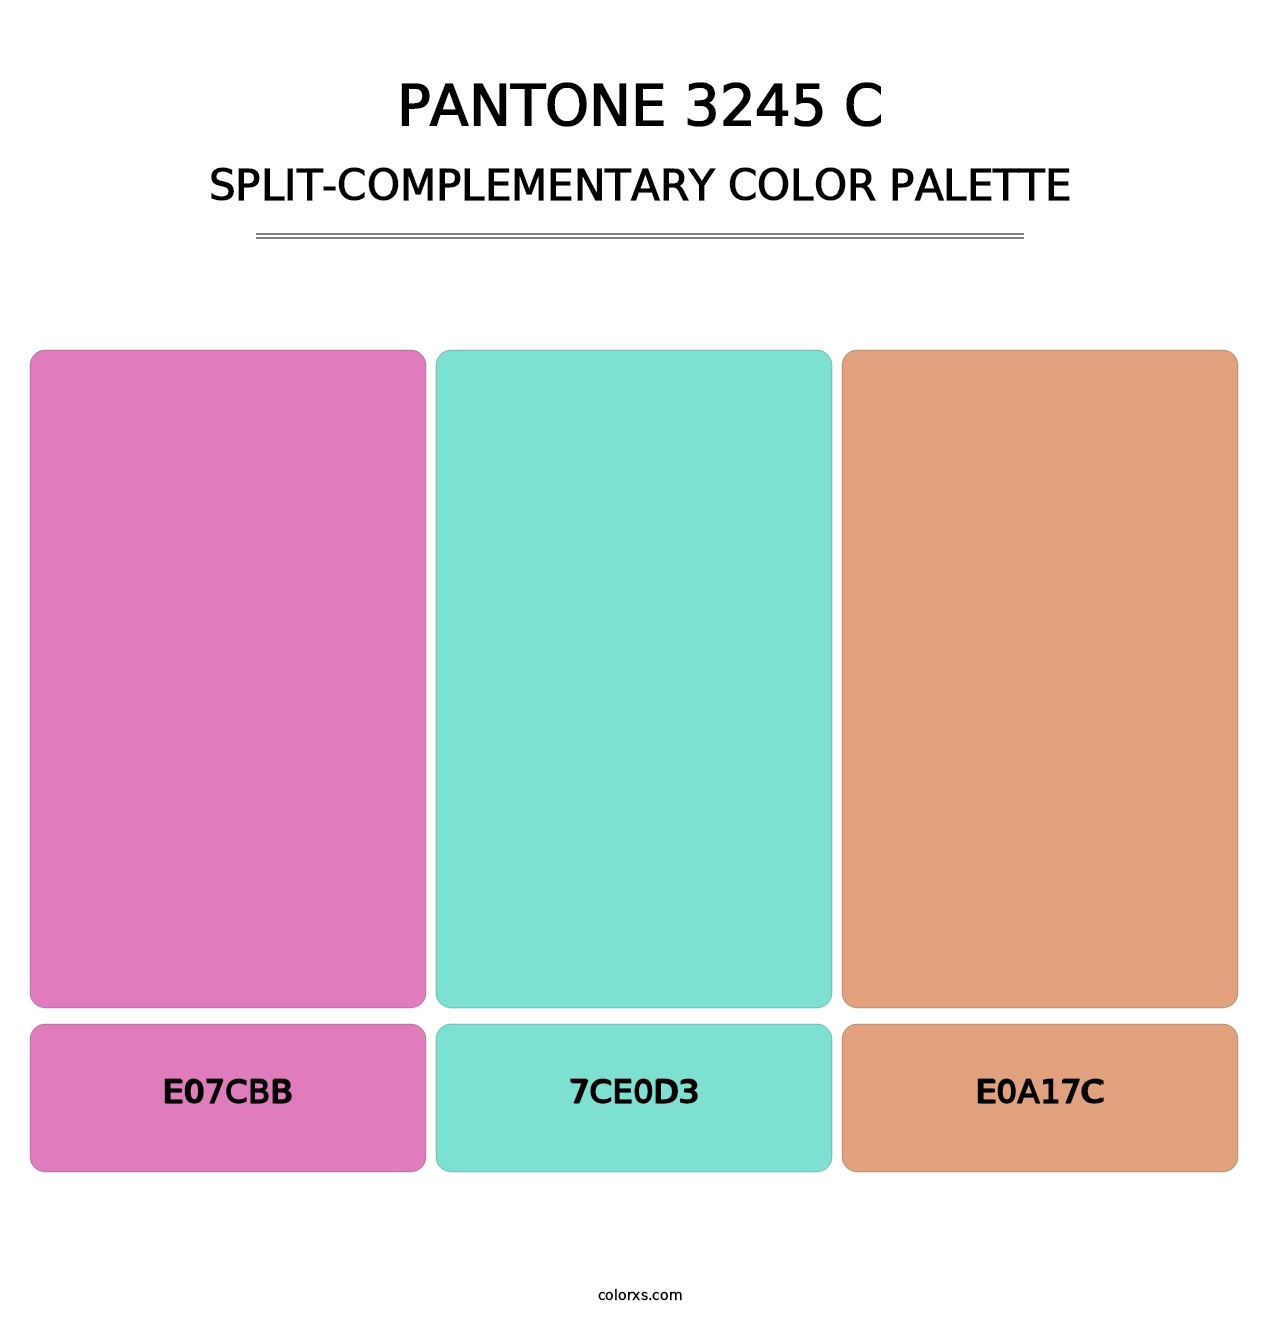 PANTONE 3245 C - Split-Complementary Color Palette